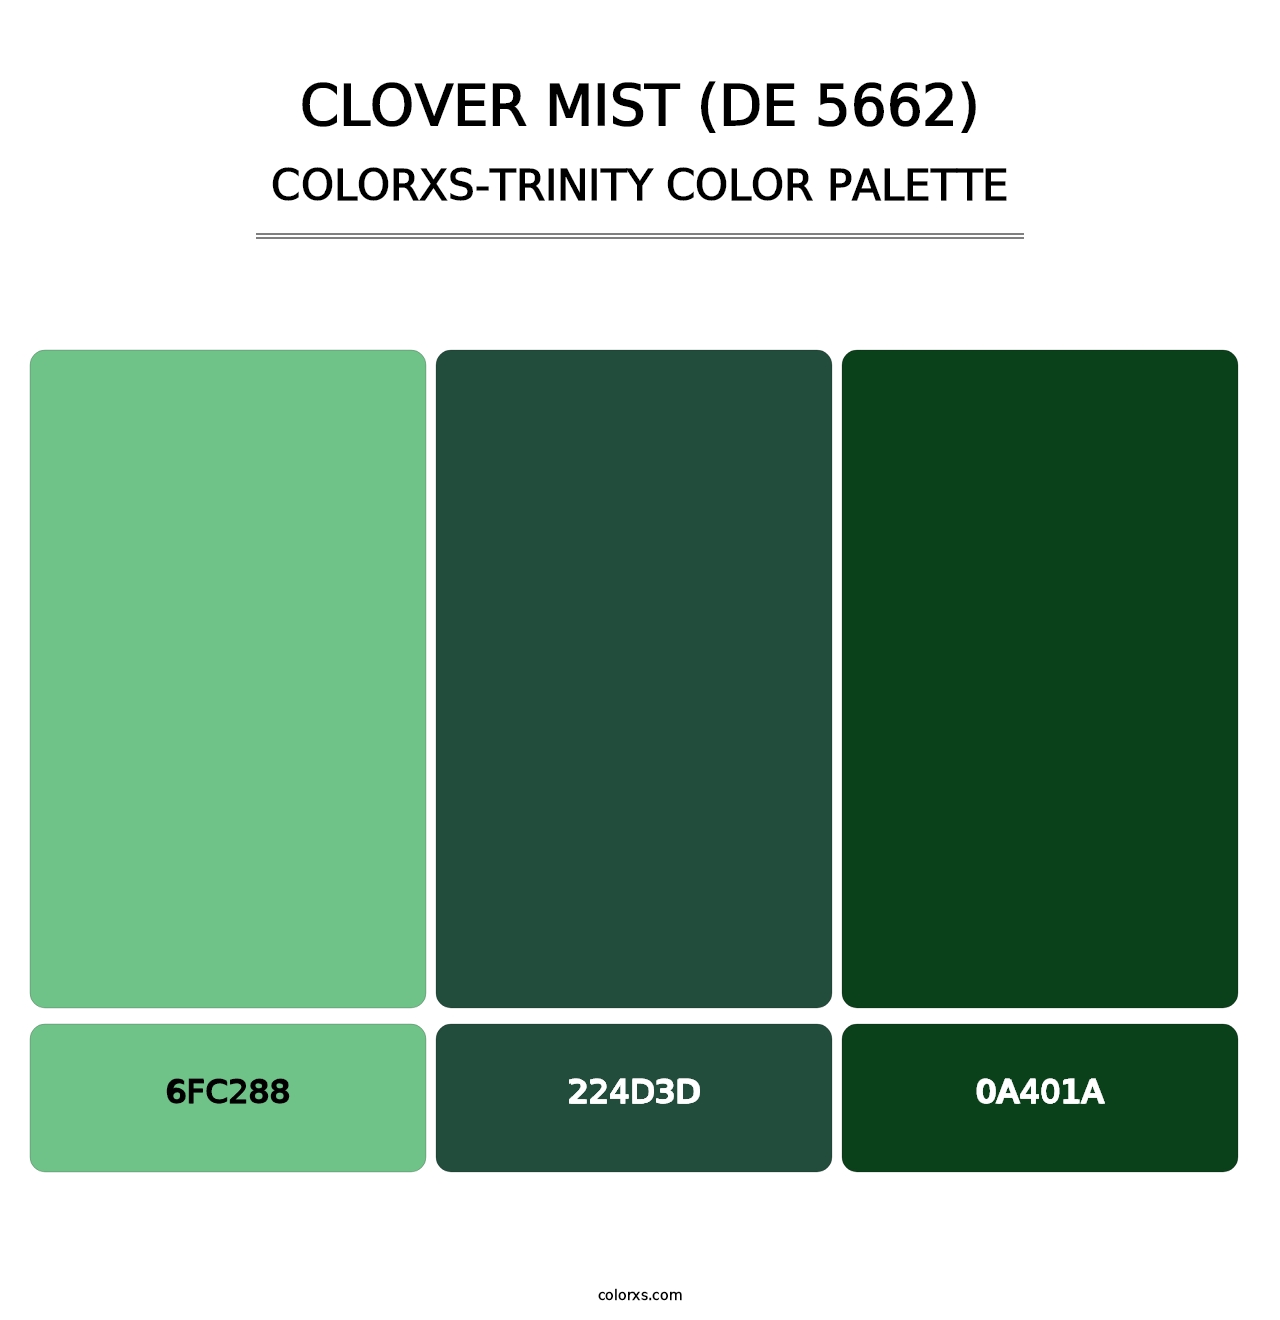 Clover Mist (DE 5662) - Colorxs Trinity Palette